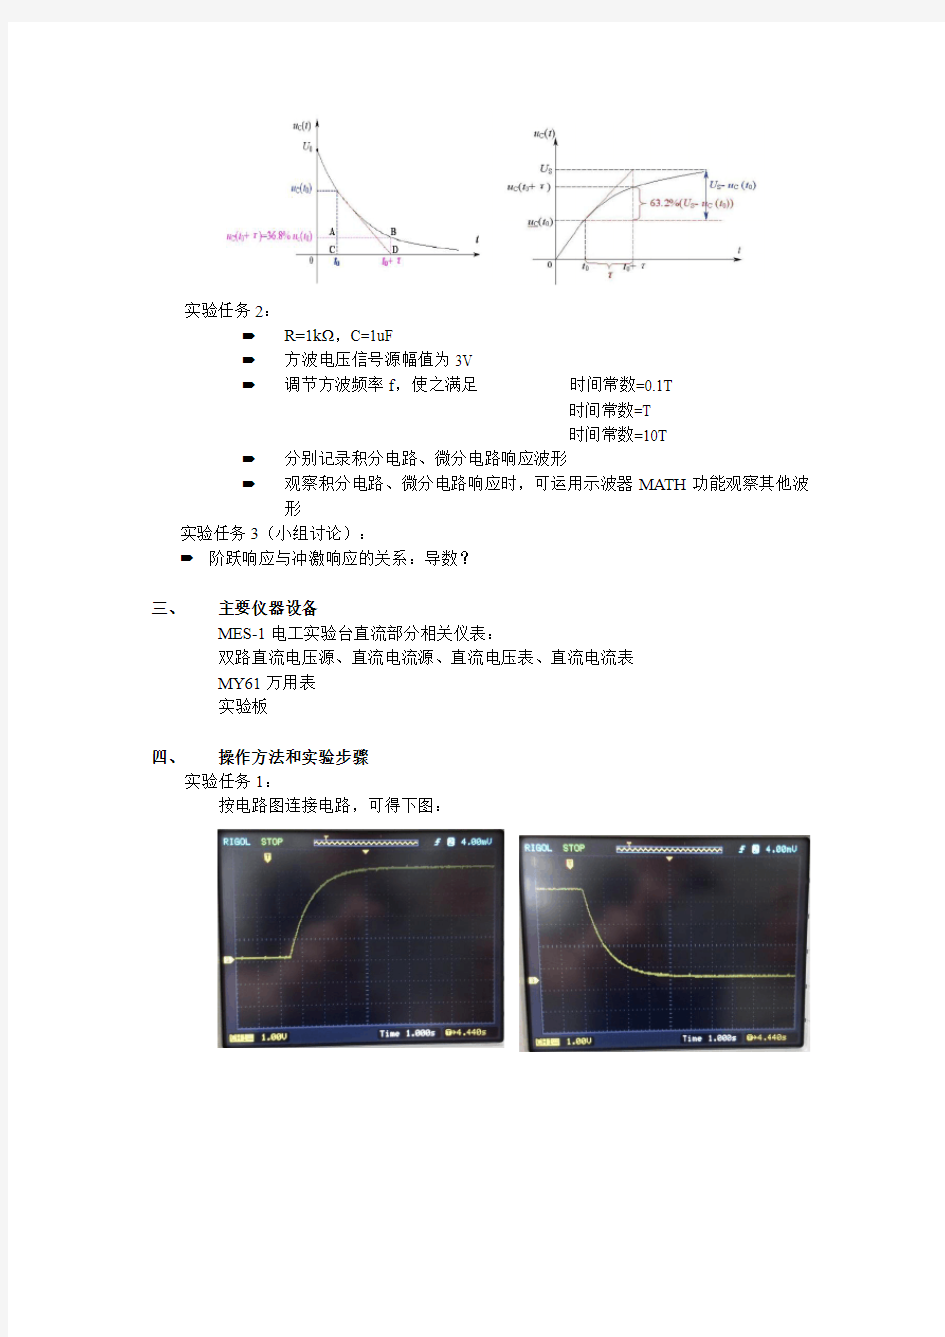 浙江大学-一阶RC电路的暂态响应-实验报告